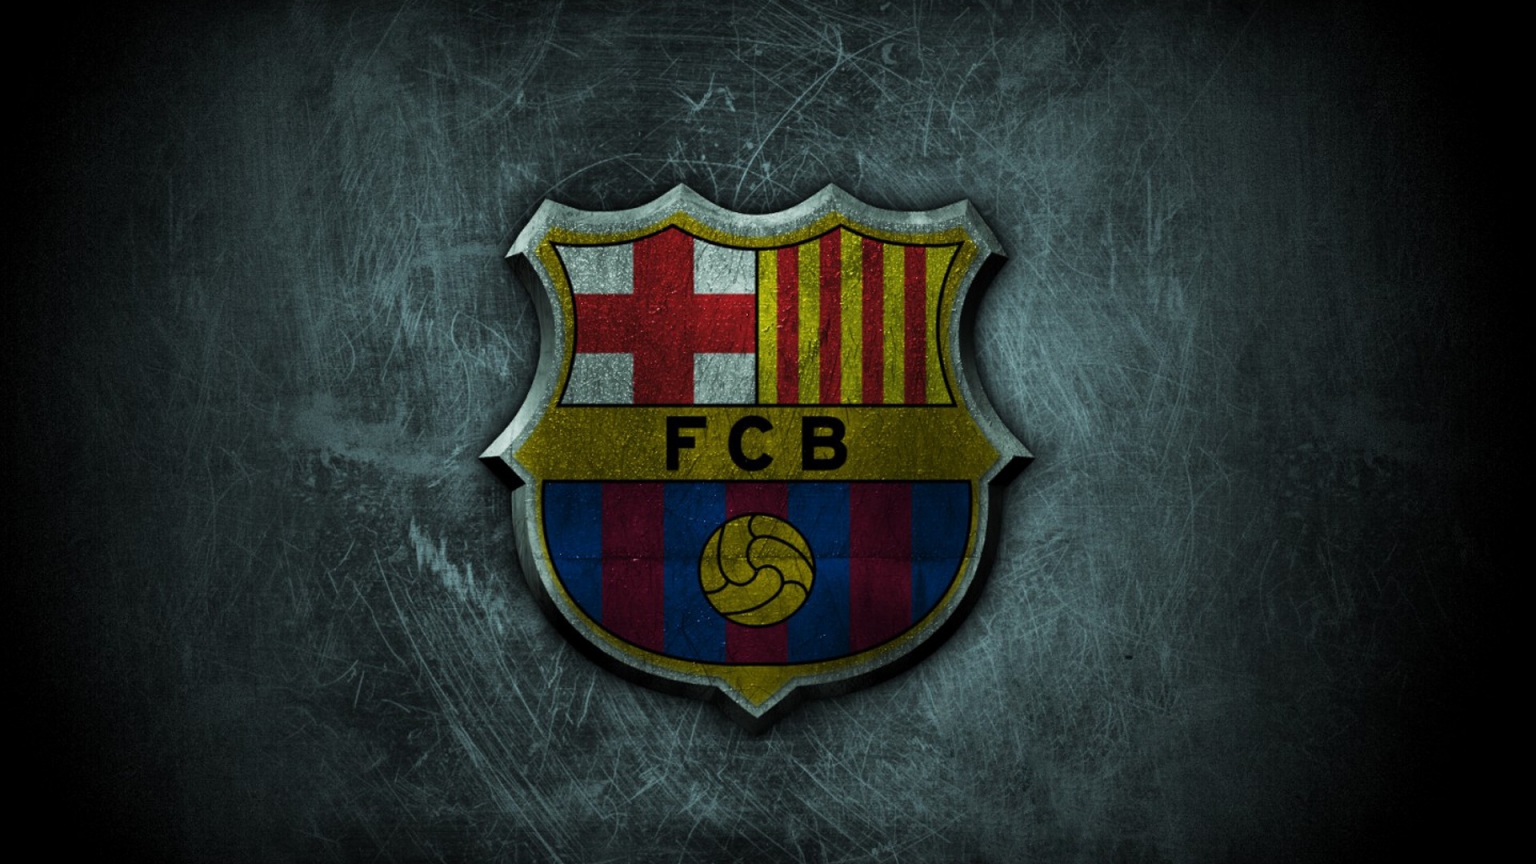 FC Barcelona Grunge Logo for 1536 x 864 HDTV resolution